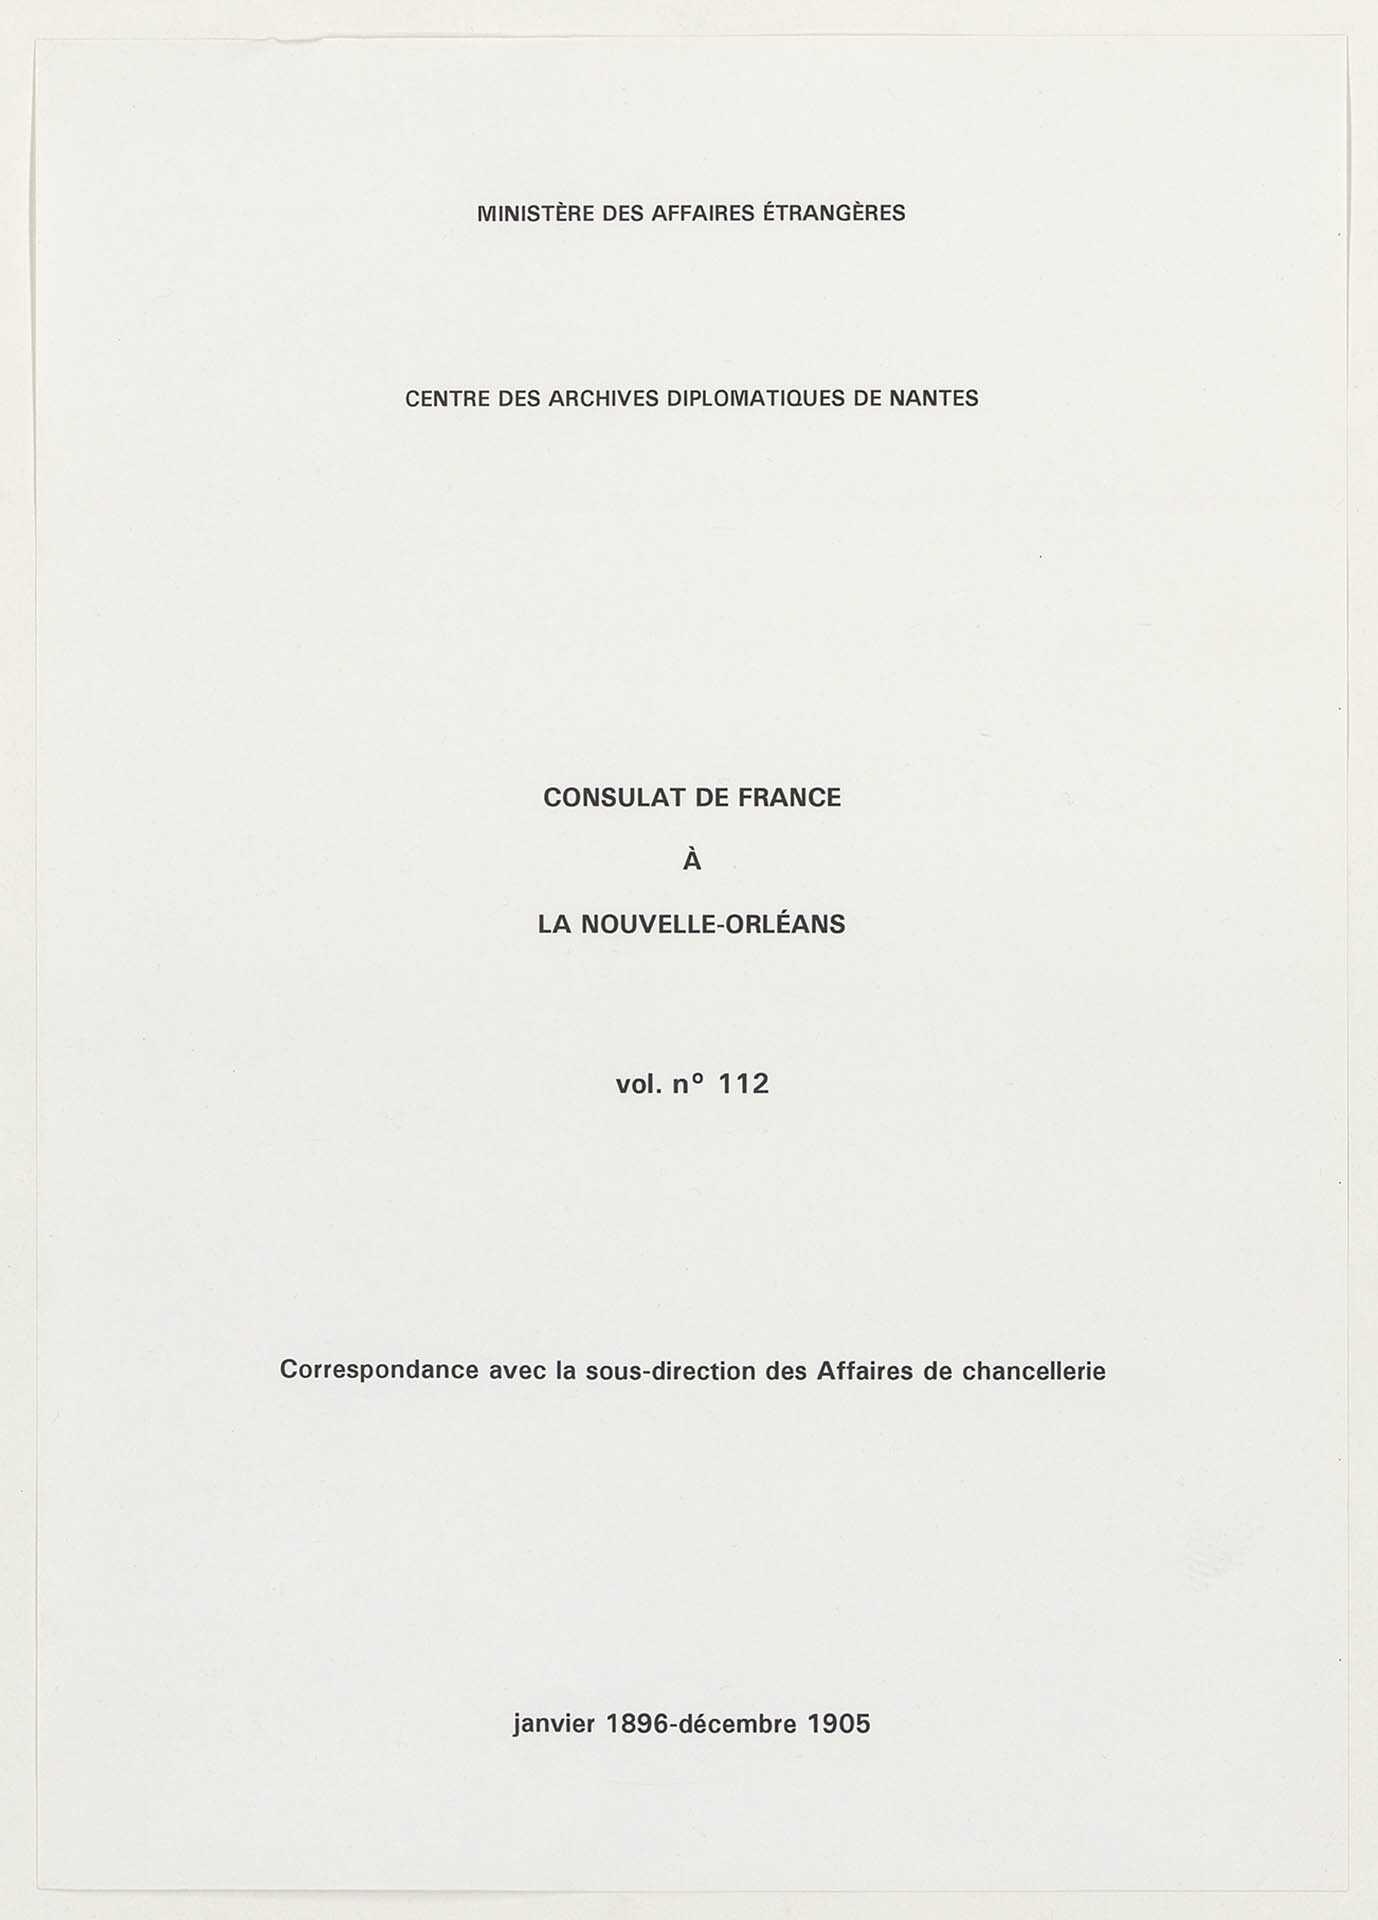 Correspondance avec la sous-direction des Affaires de chancellerie (janvier 1896-décembre 1905).